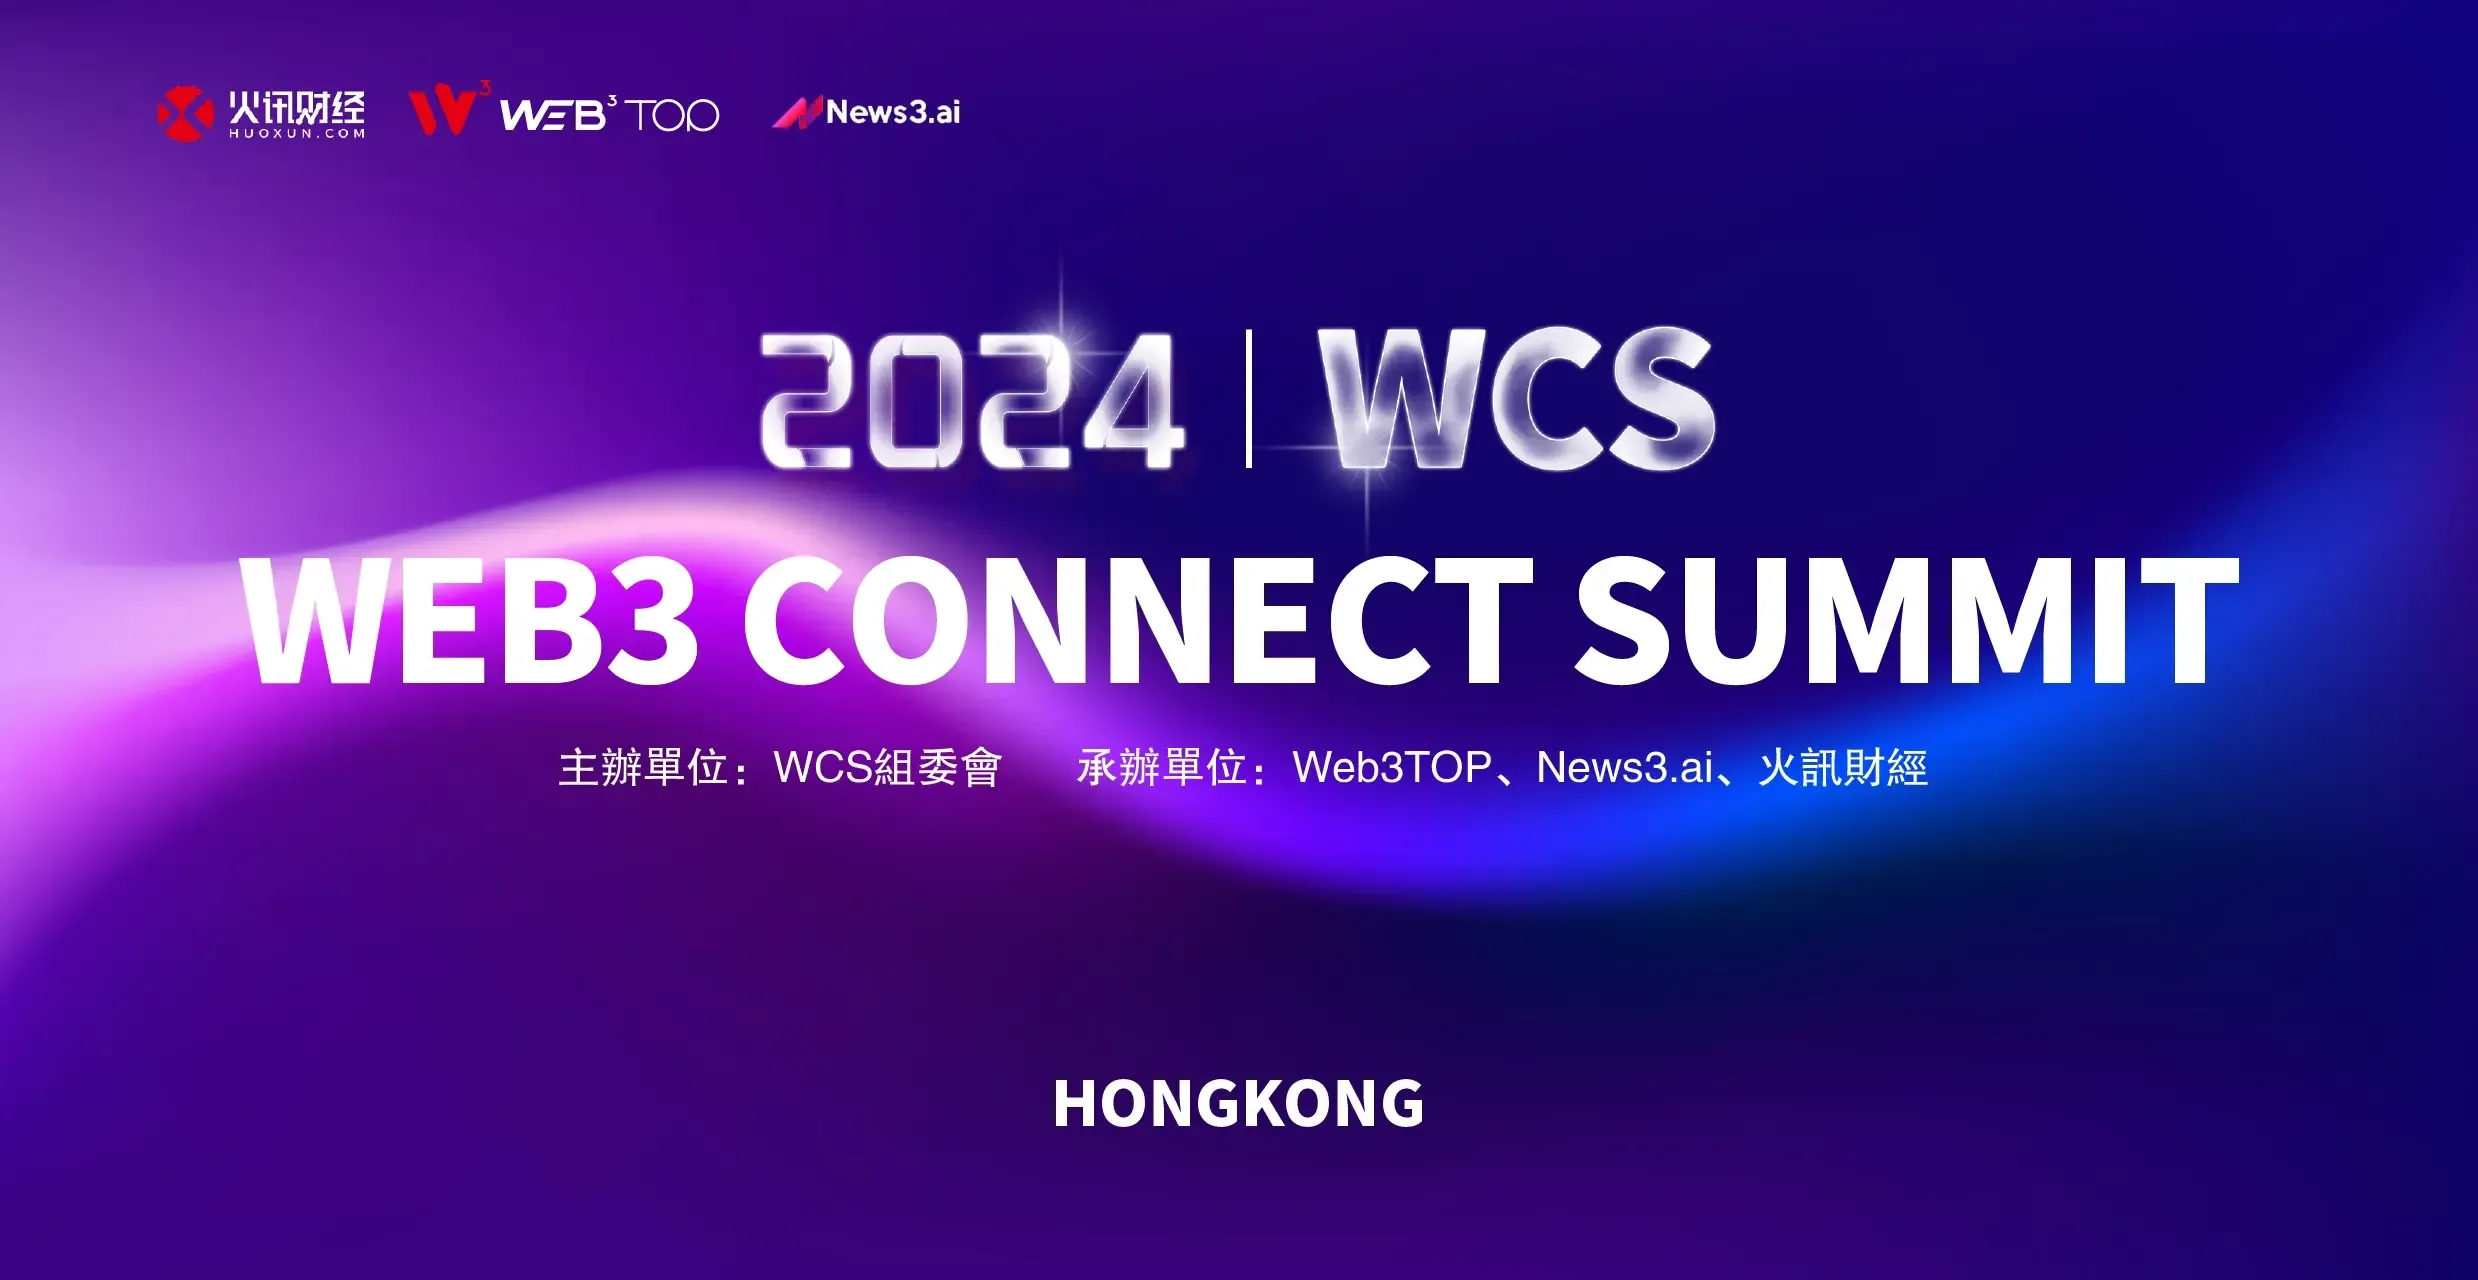 WCS 香港峰会将于 6 月 25 日举办：汇聚全球 Web3 领袖，高峰对话献计献策